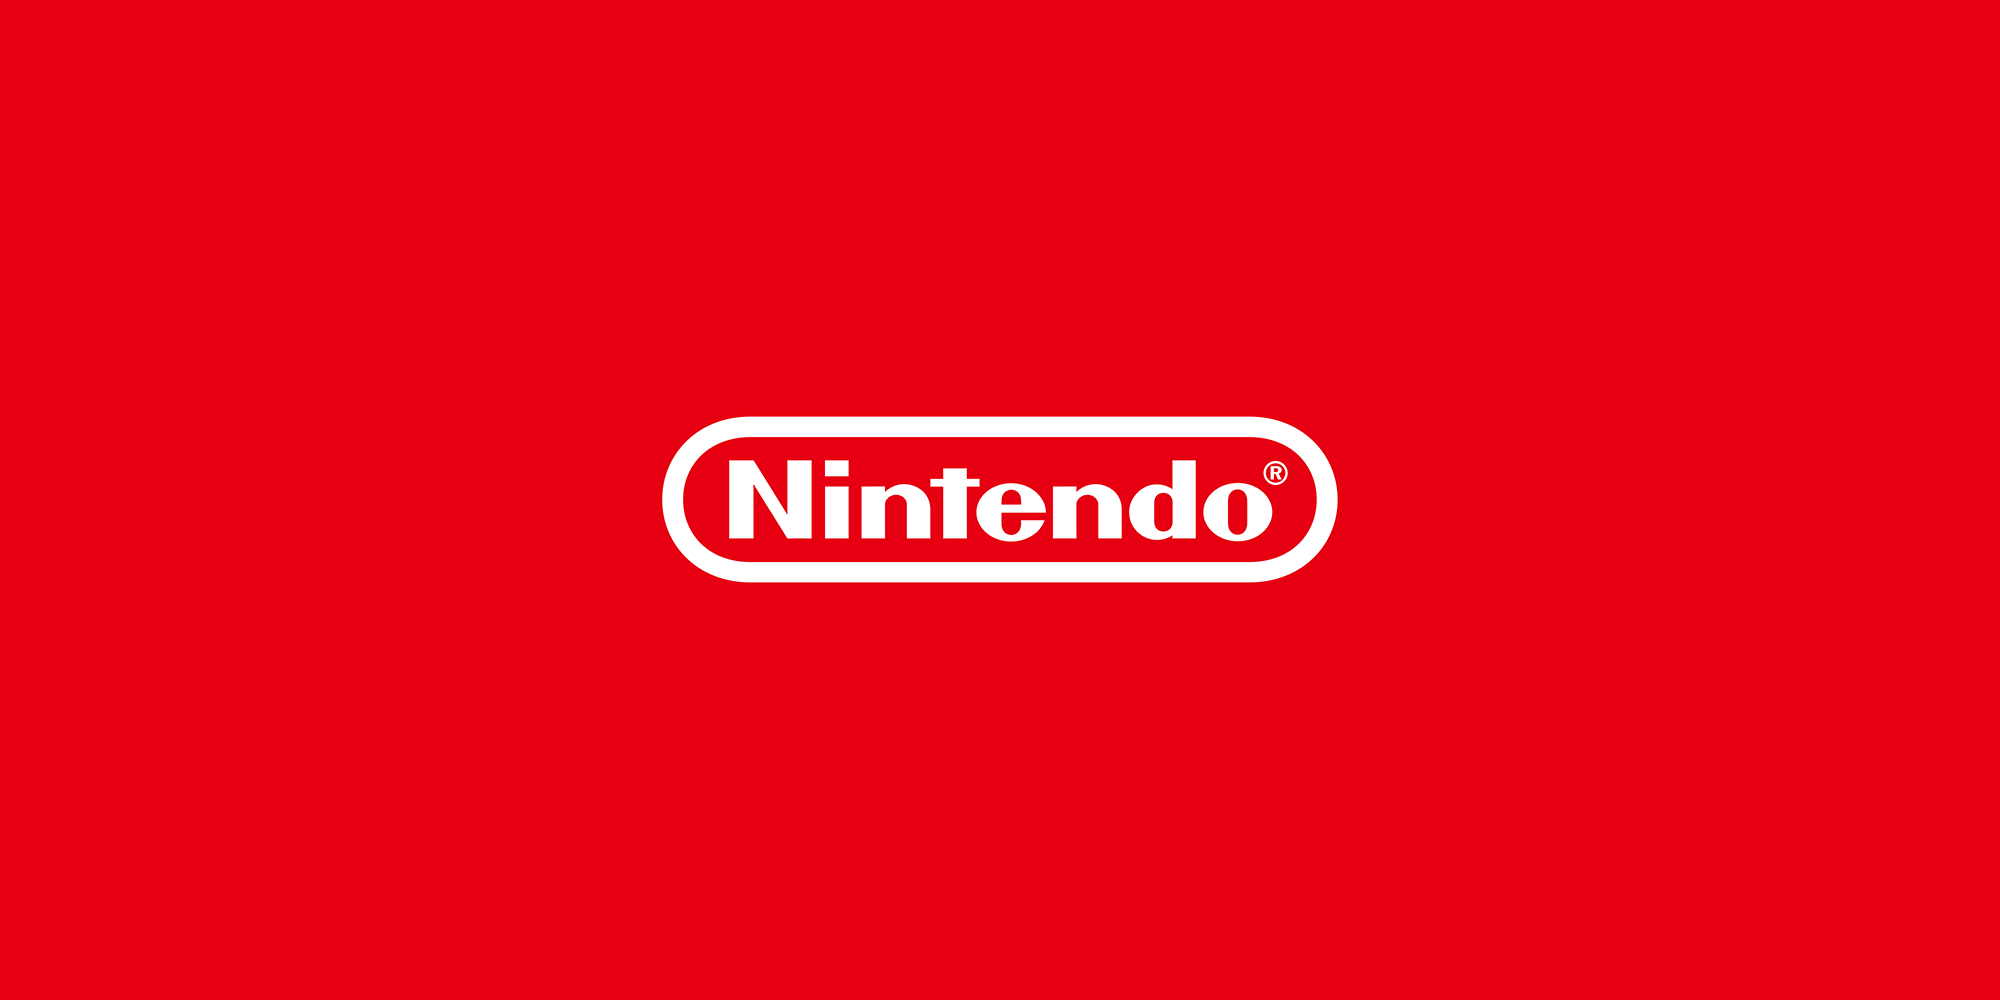 Nintendo lanza el juego Metroid Prime